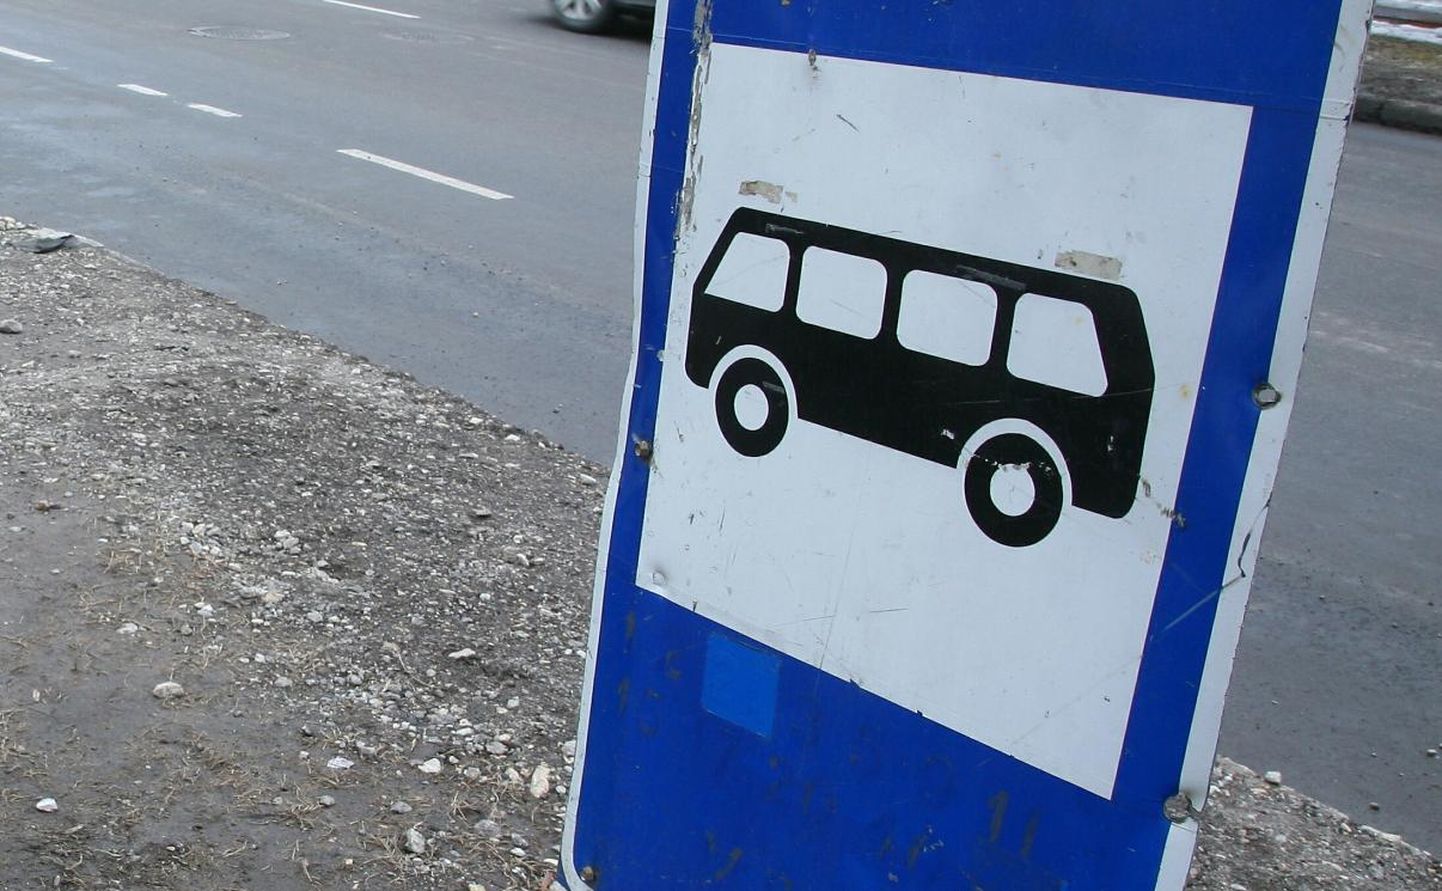 Pärnumaa ühistranspordikeskus teatas, et 20. novembrist lisandub reisijate soovil Tõstamaalt Varbla suunas sõitvate busside sõiduplaani kaks peatust.